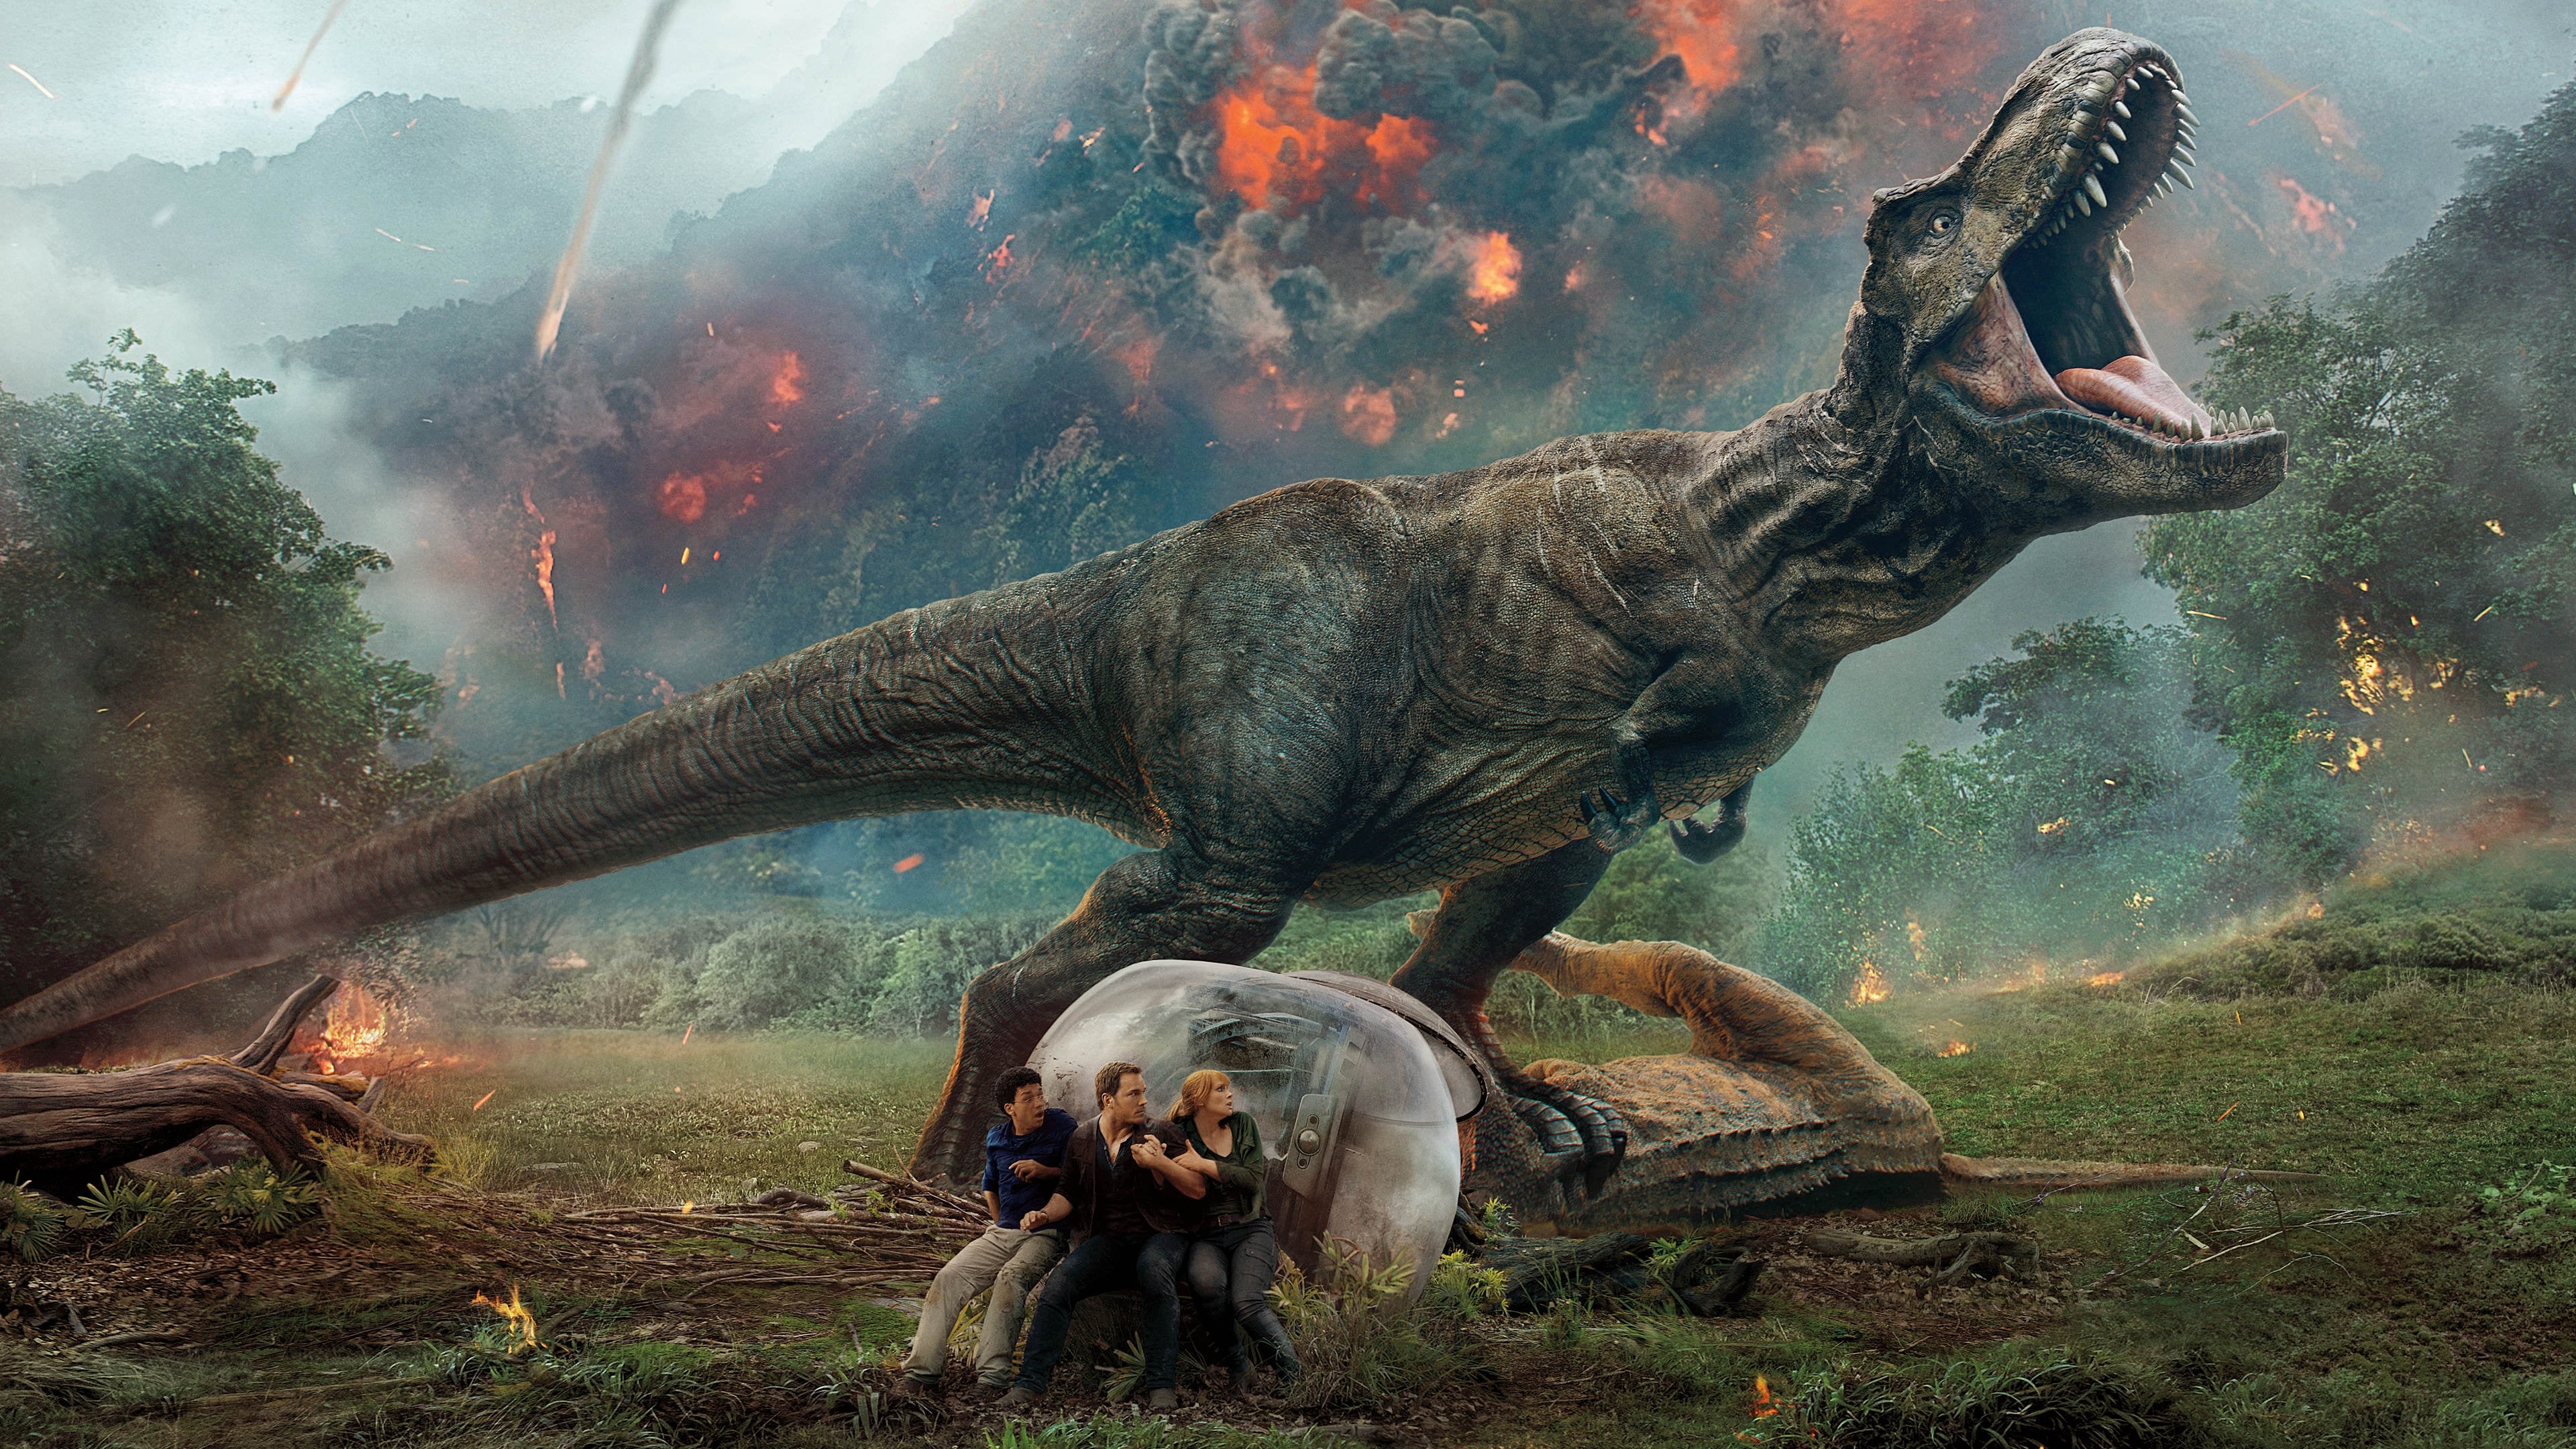 Banner Phim Thế Giới Khủng Long: Vương Quốc Sụp Đổ (Jurassic World: Fallen Kingdom)